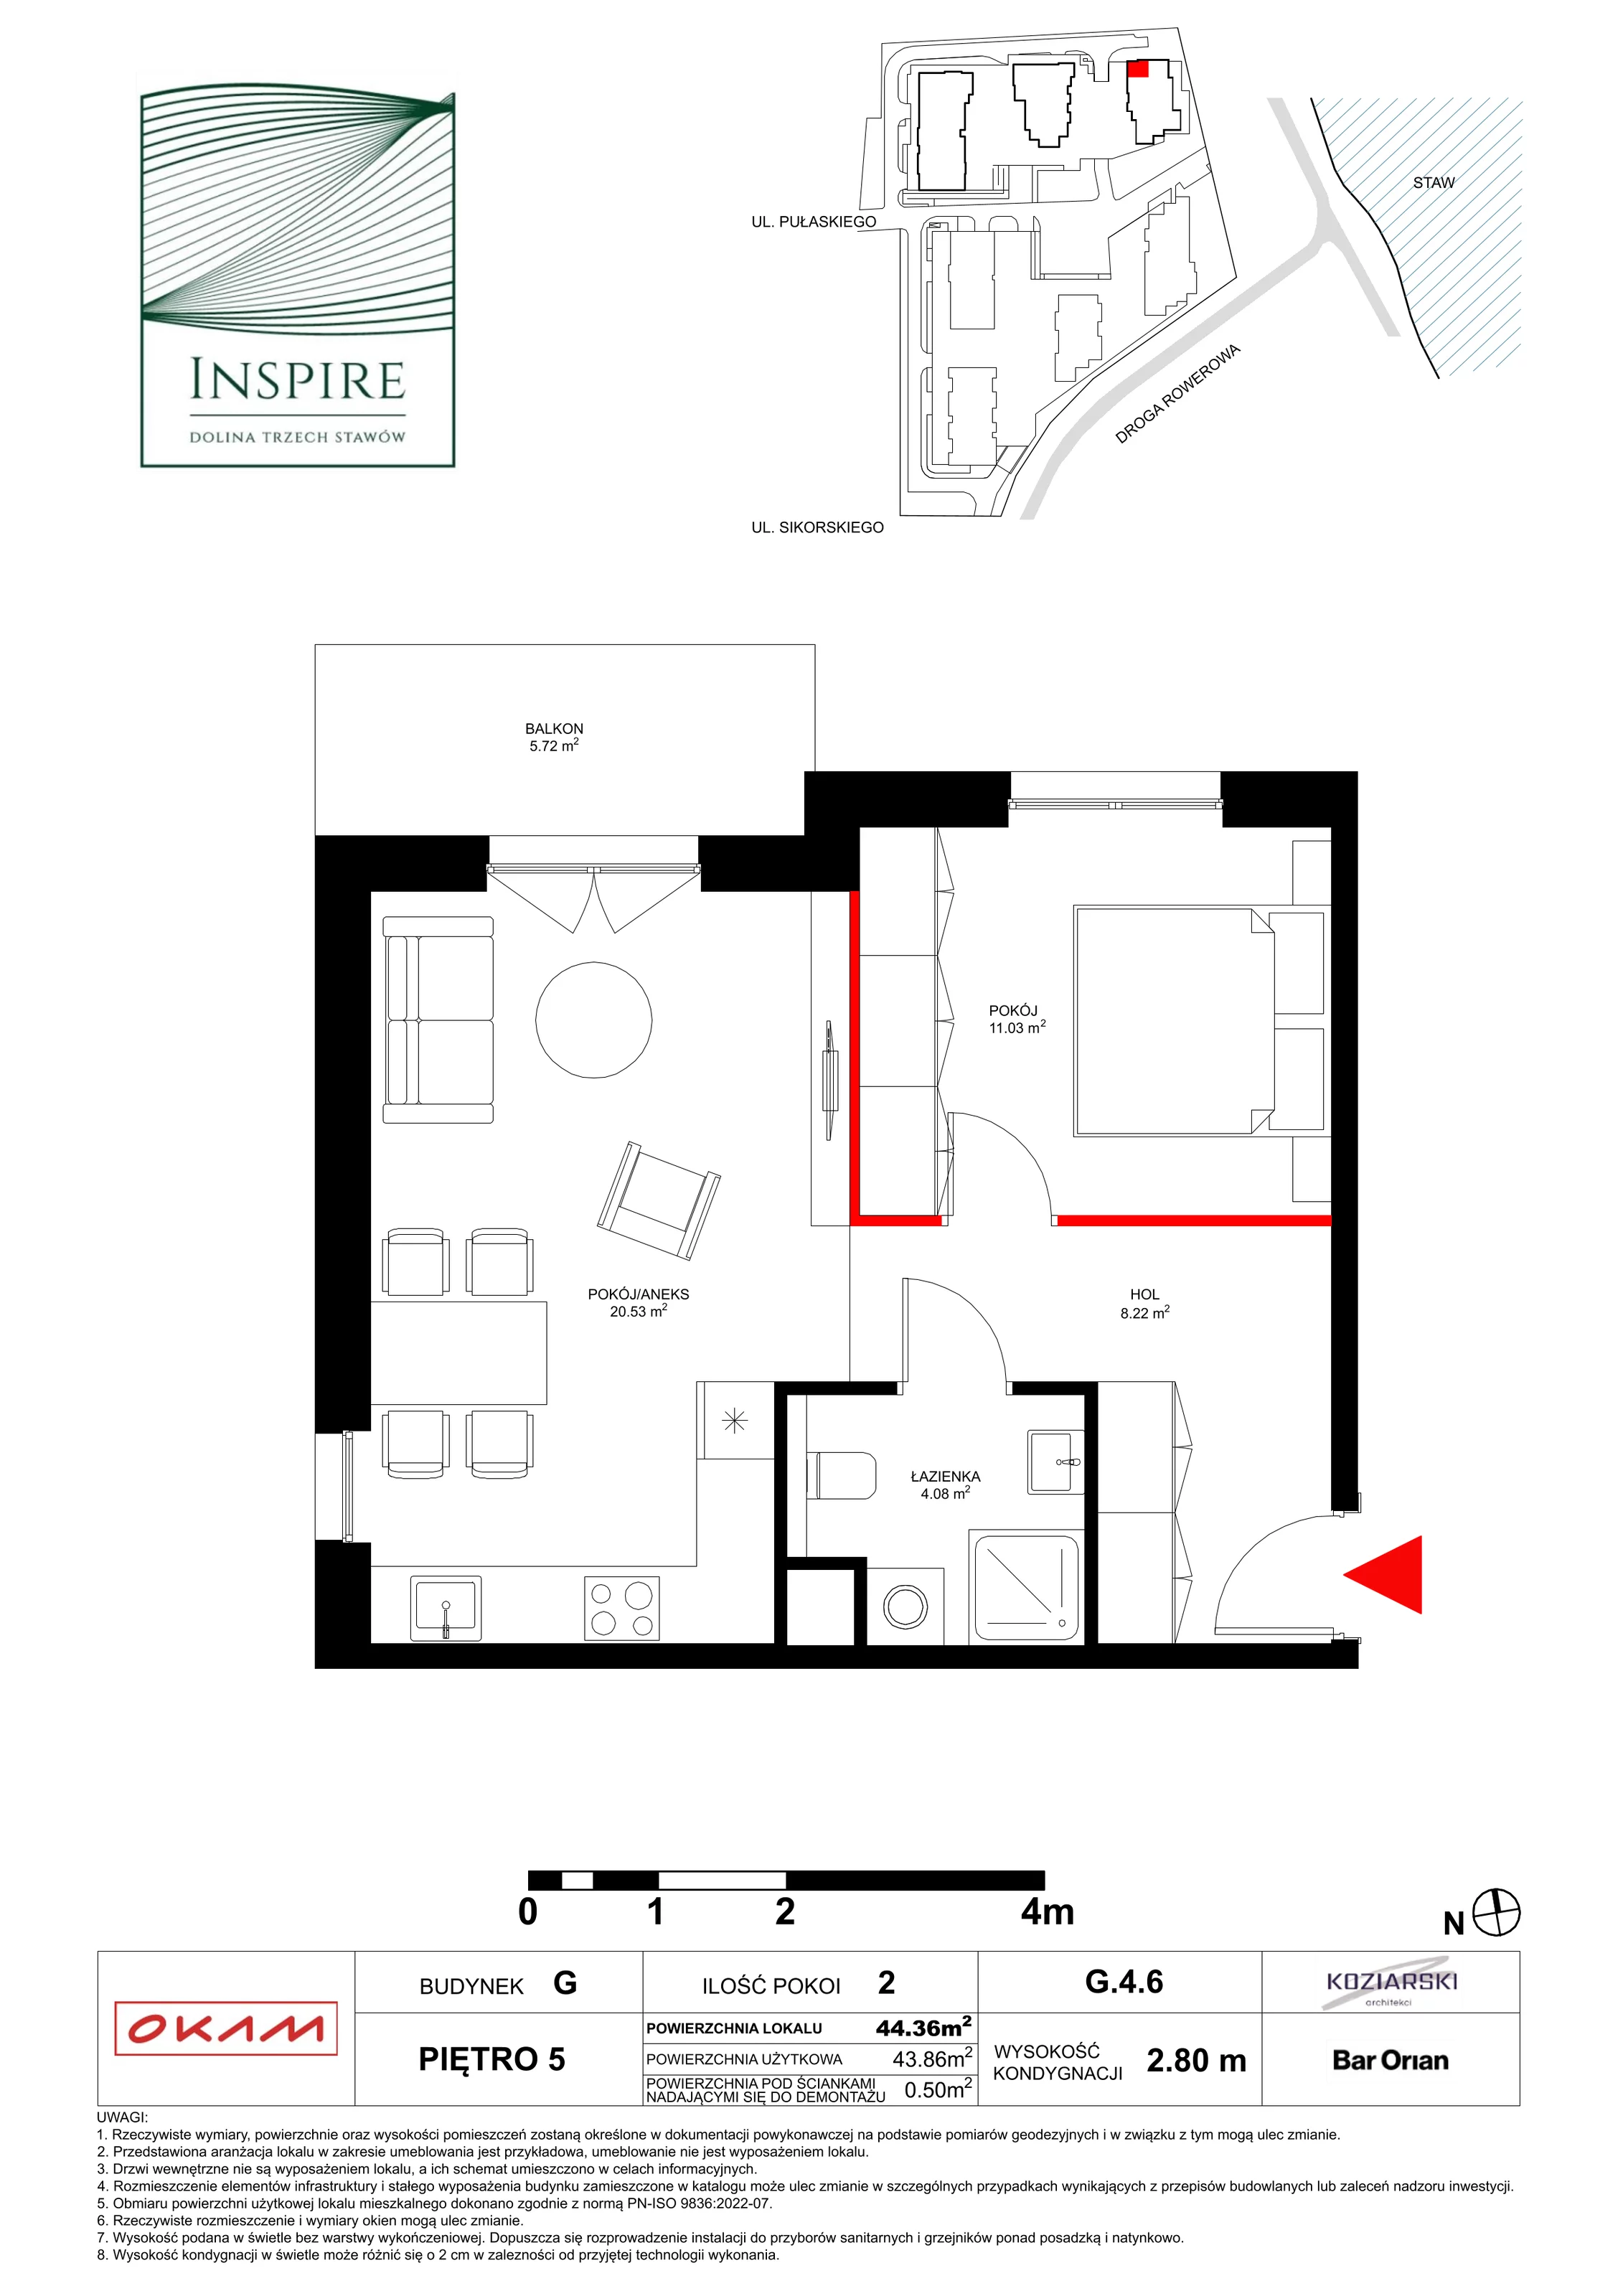 Apartament 43,61 m², piętro 5, oferta nr G.5.6, Inspire, Katowice, Osiedle Paderewskiego-Muchowiec, Dolina Trzech Stawów, ul. gen. Sikorskiego 41